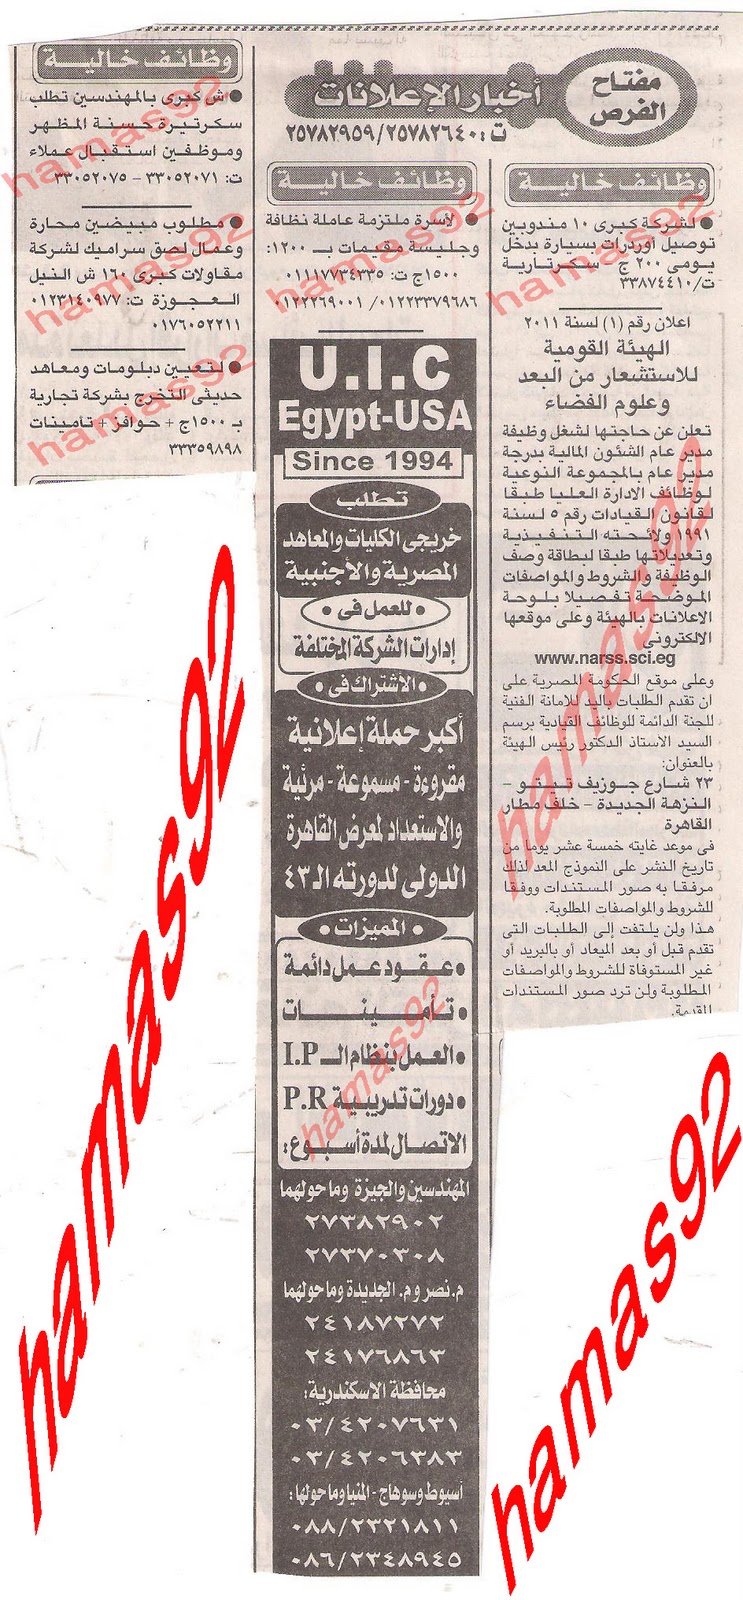 وظائف جريدة الاخبار اليوم 16/11/2011 -وظائف الاخبار عدد اليوم الاربعاء 16/11/2011  Picture+001